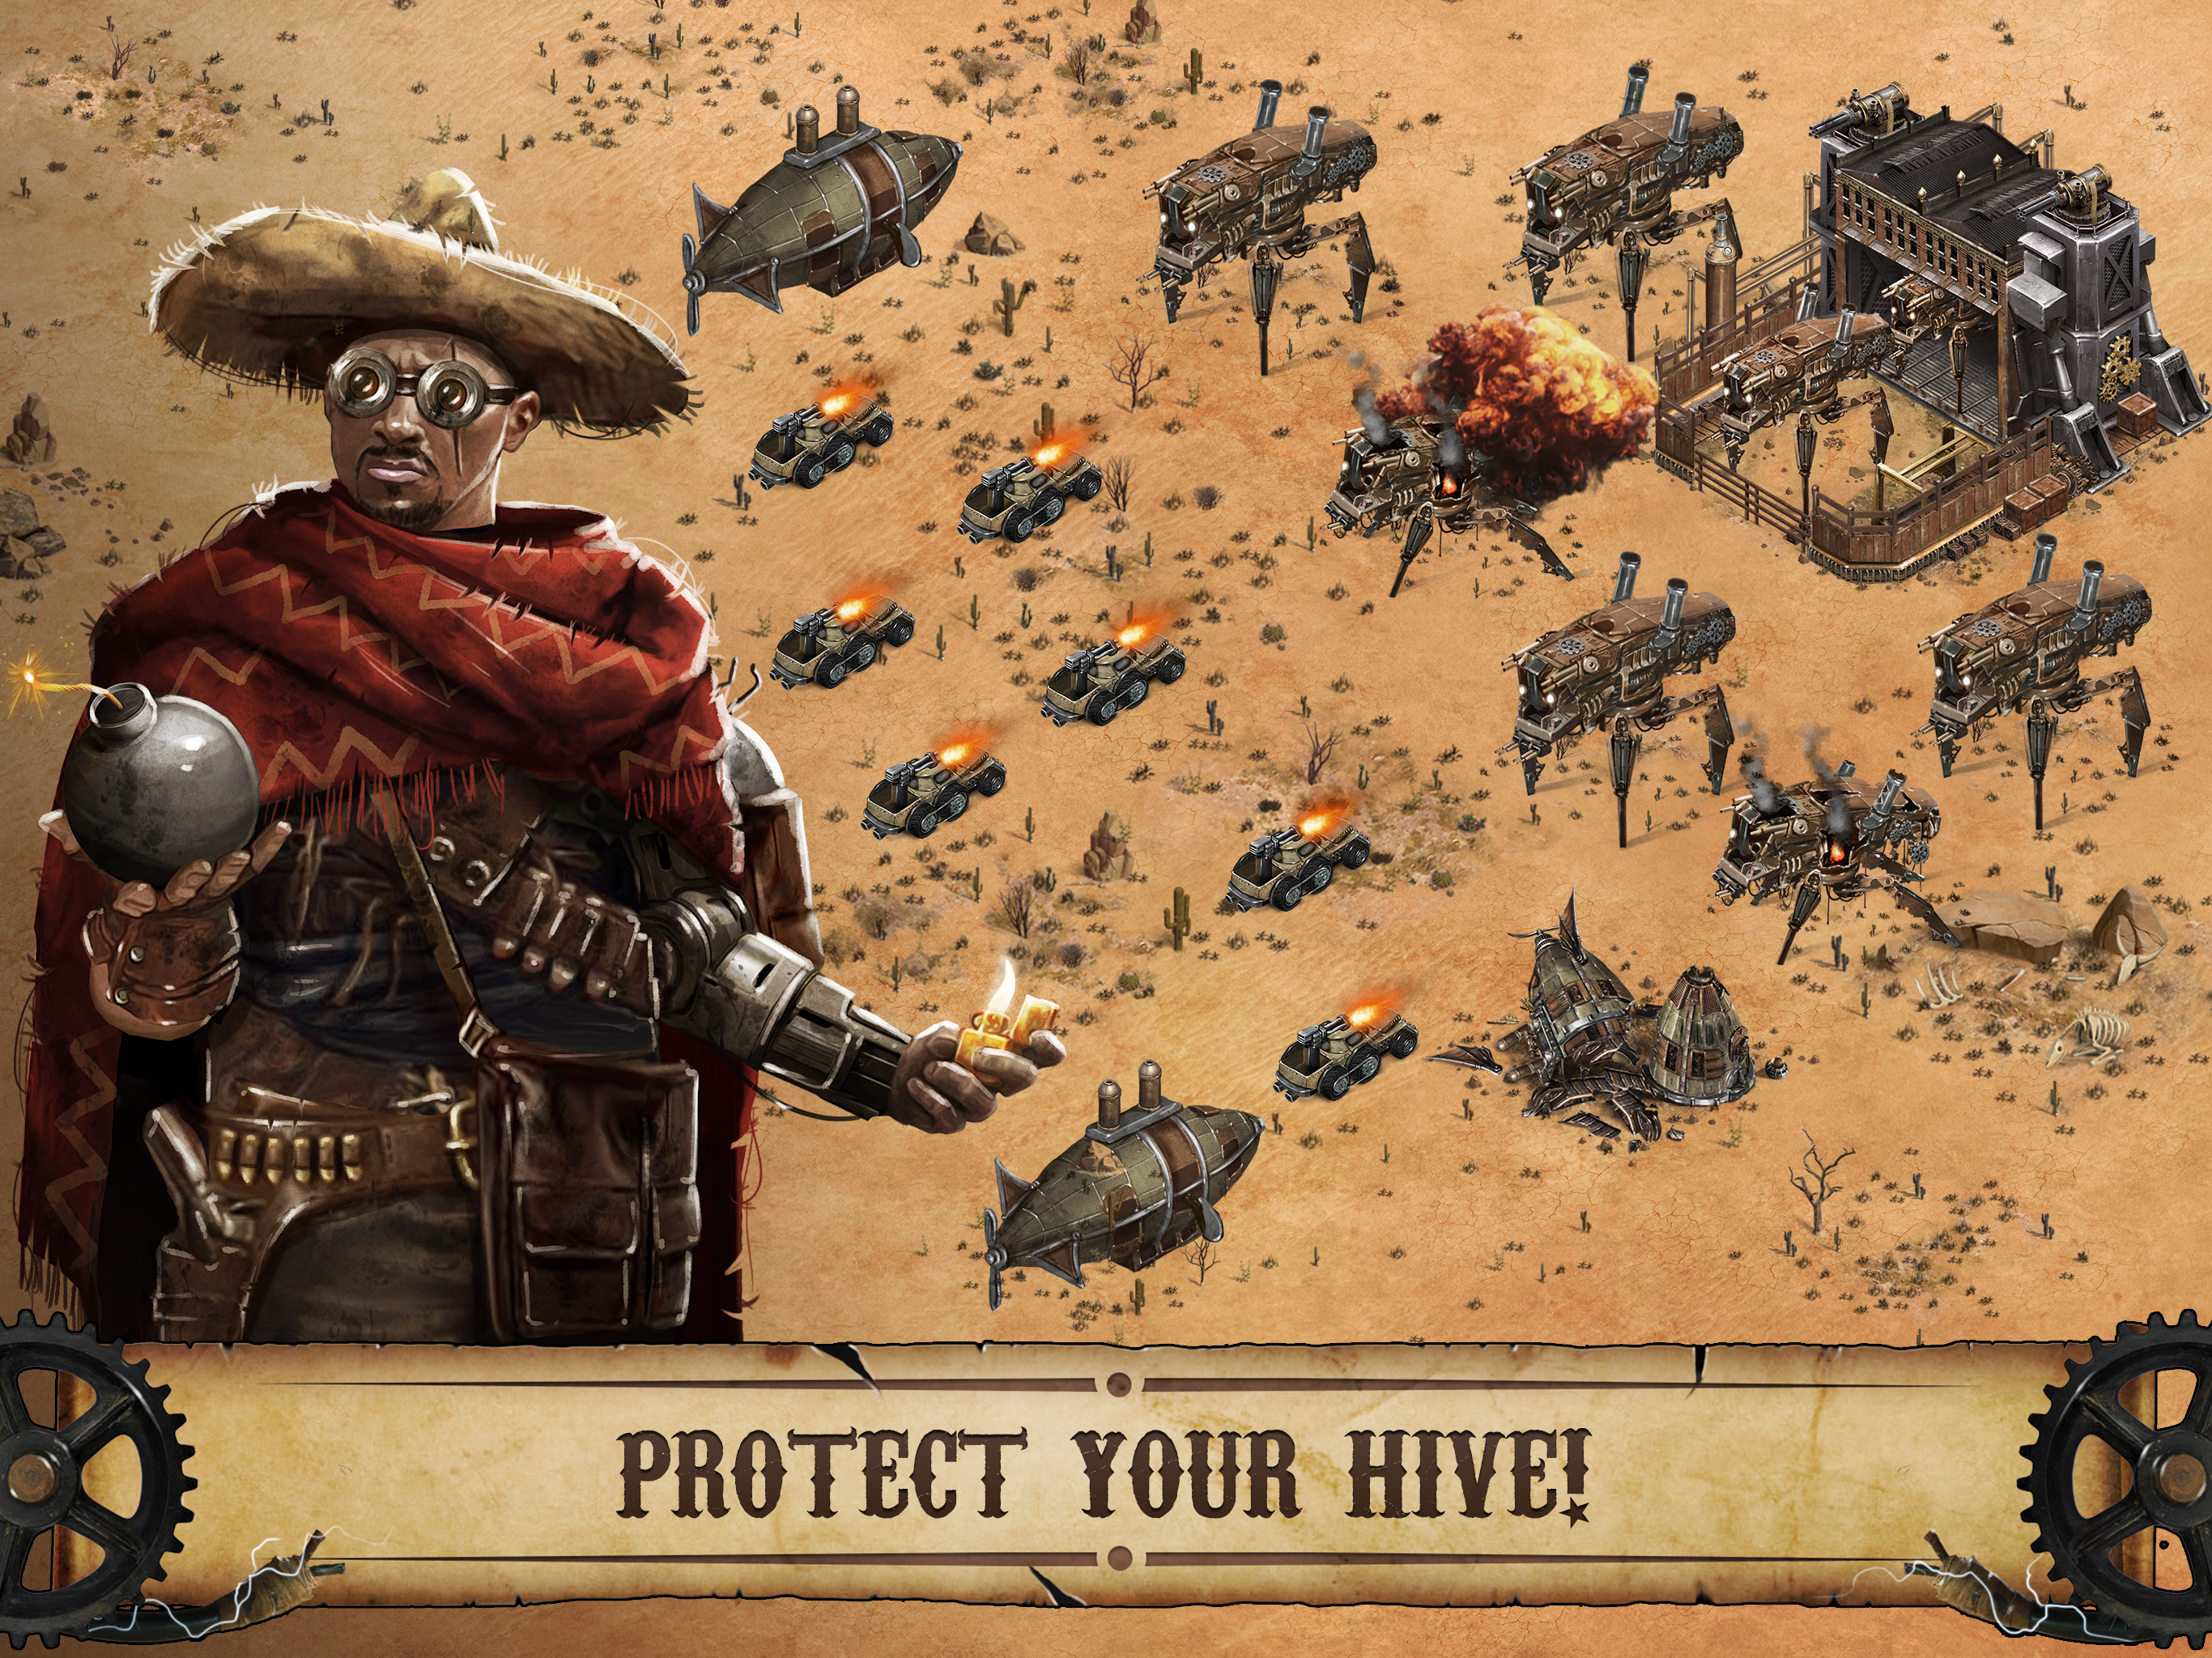 Wild West: Steampunk Alliances遊戲截圖